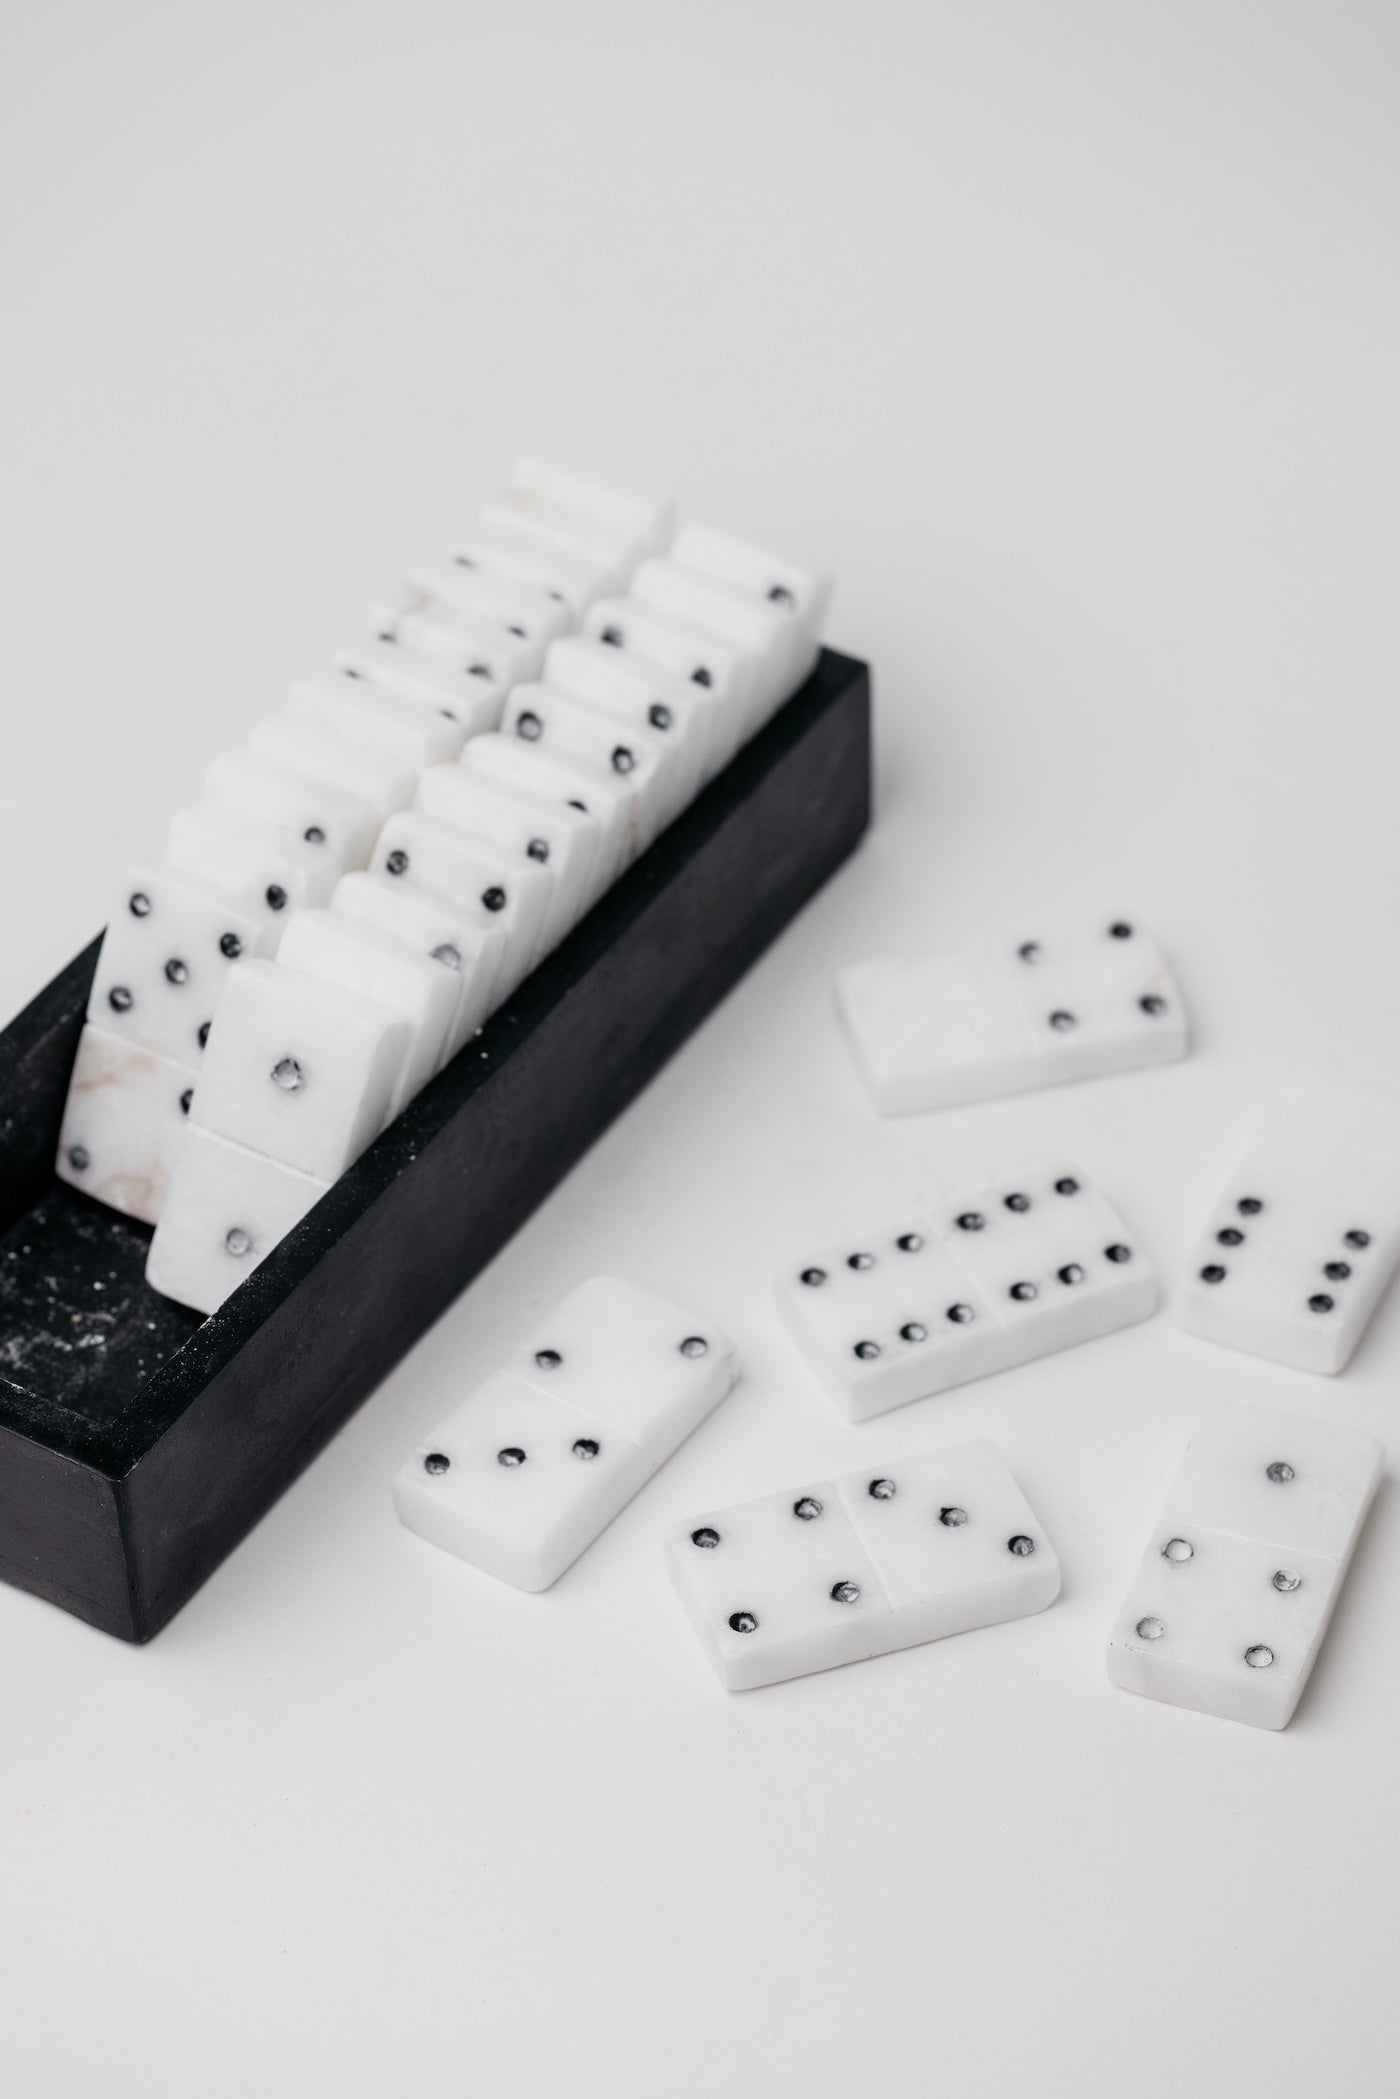 Arbor Domino Set